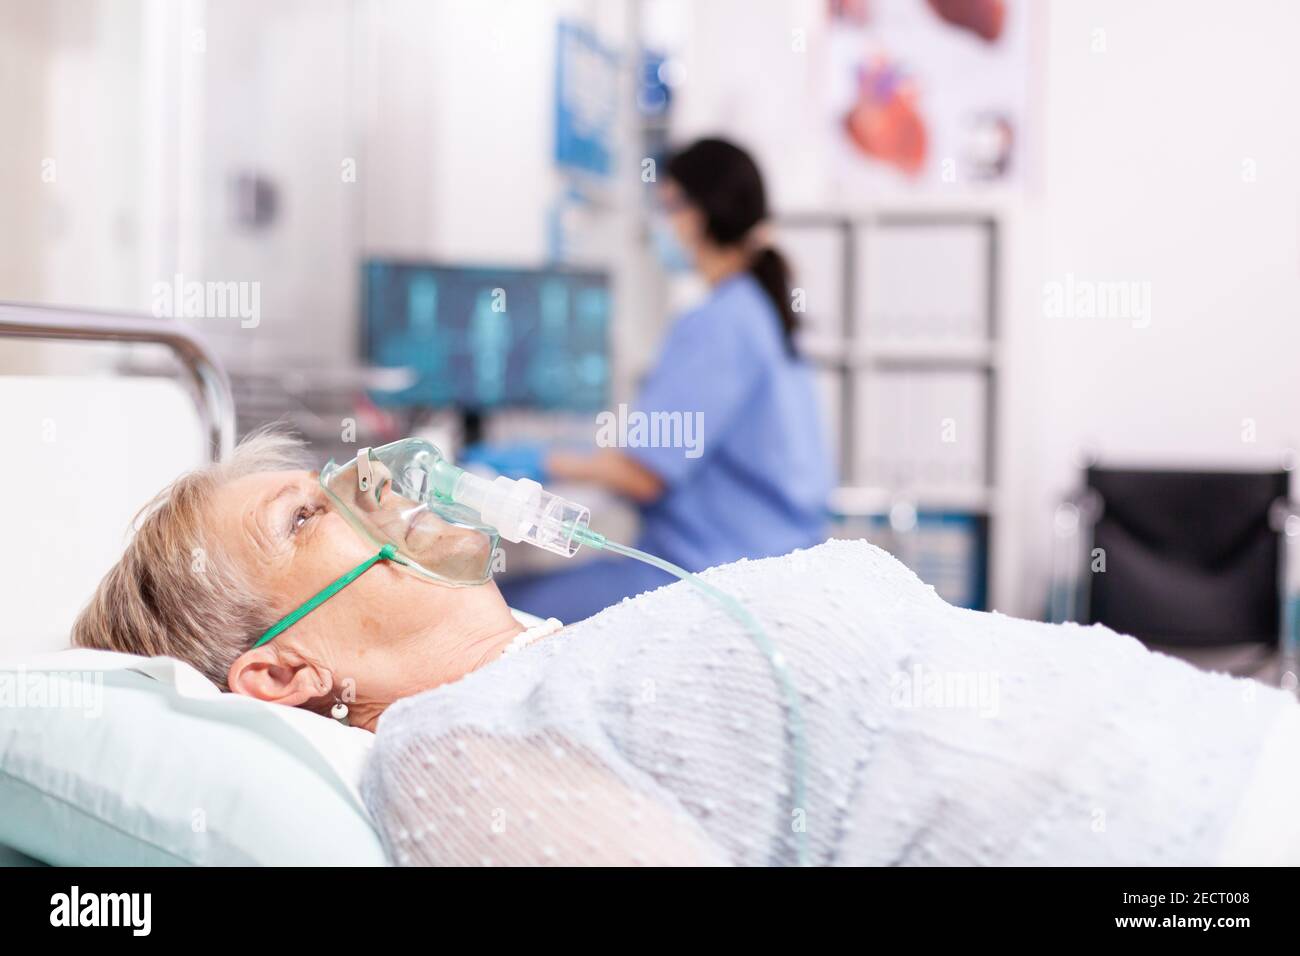 Ältere Frau mit Atemwegserkrankung wegen covid19 mit Sauerstoffmaske. Patient im Krankenhauszimmer, der während einer Coronavirus-Pandemie auf einem medizinischen Bett mit infizierter Lunge liegt und ein Atemproblem hat. Stockfoto